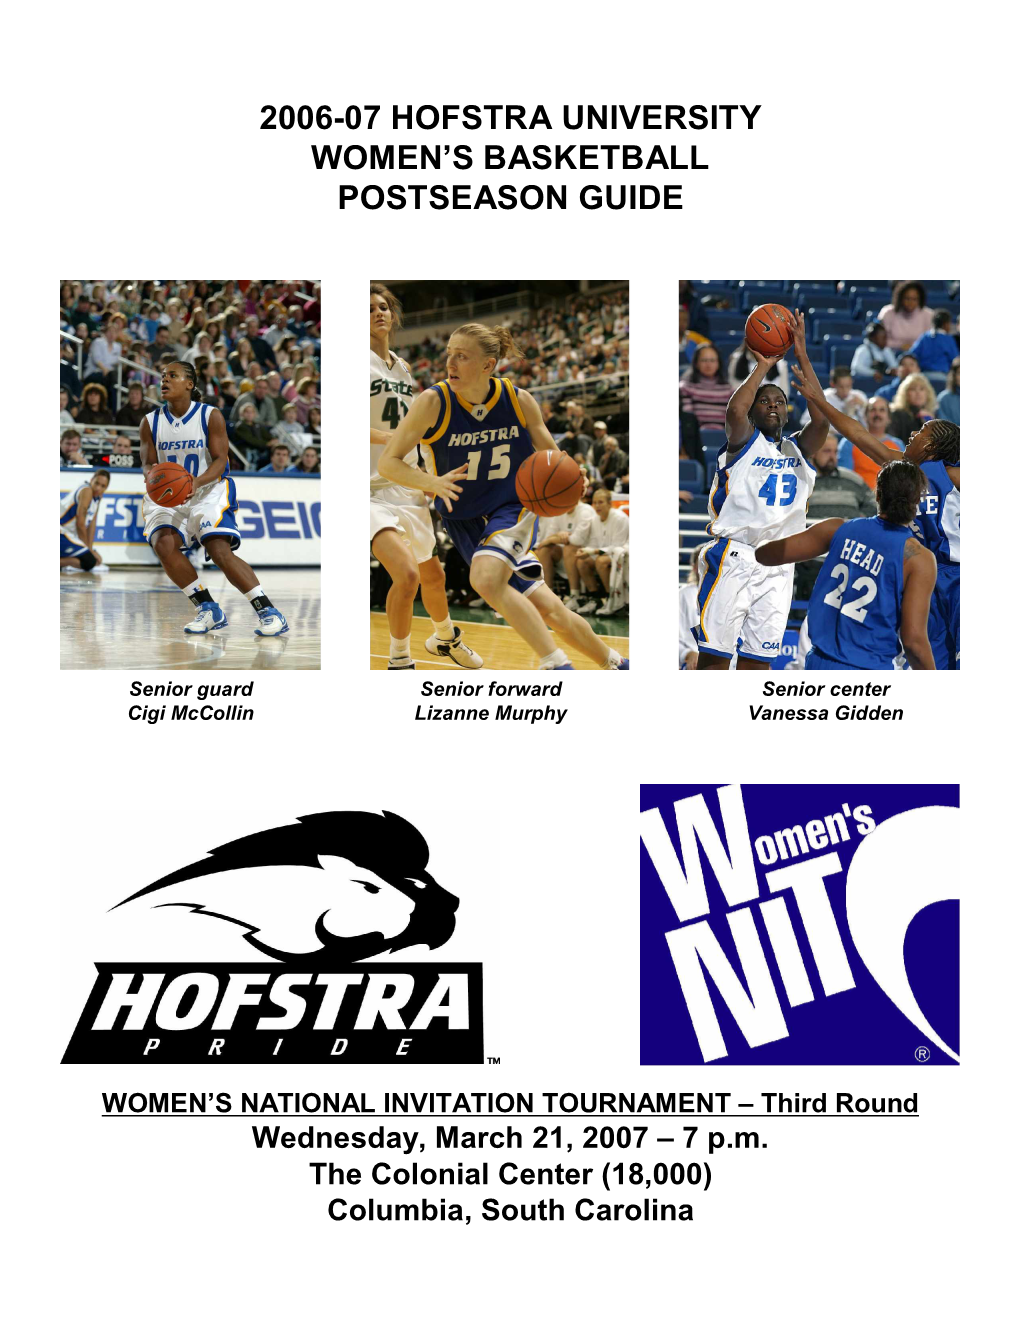 2006-07 Hofstra University Women's Basketball